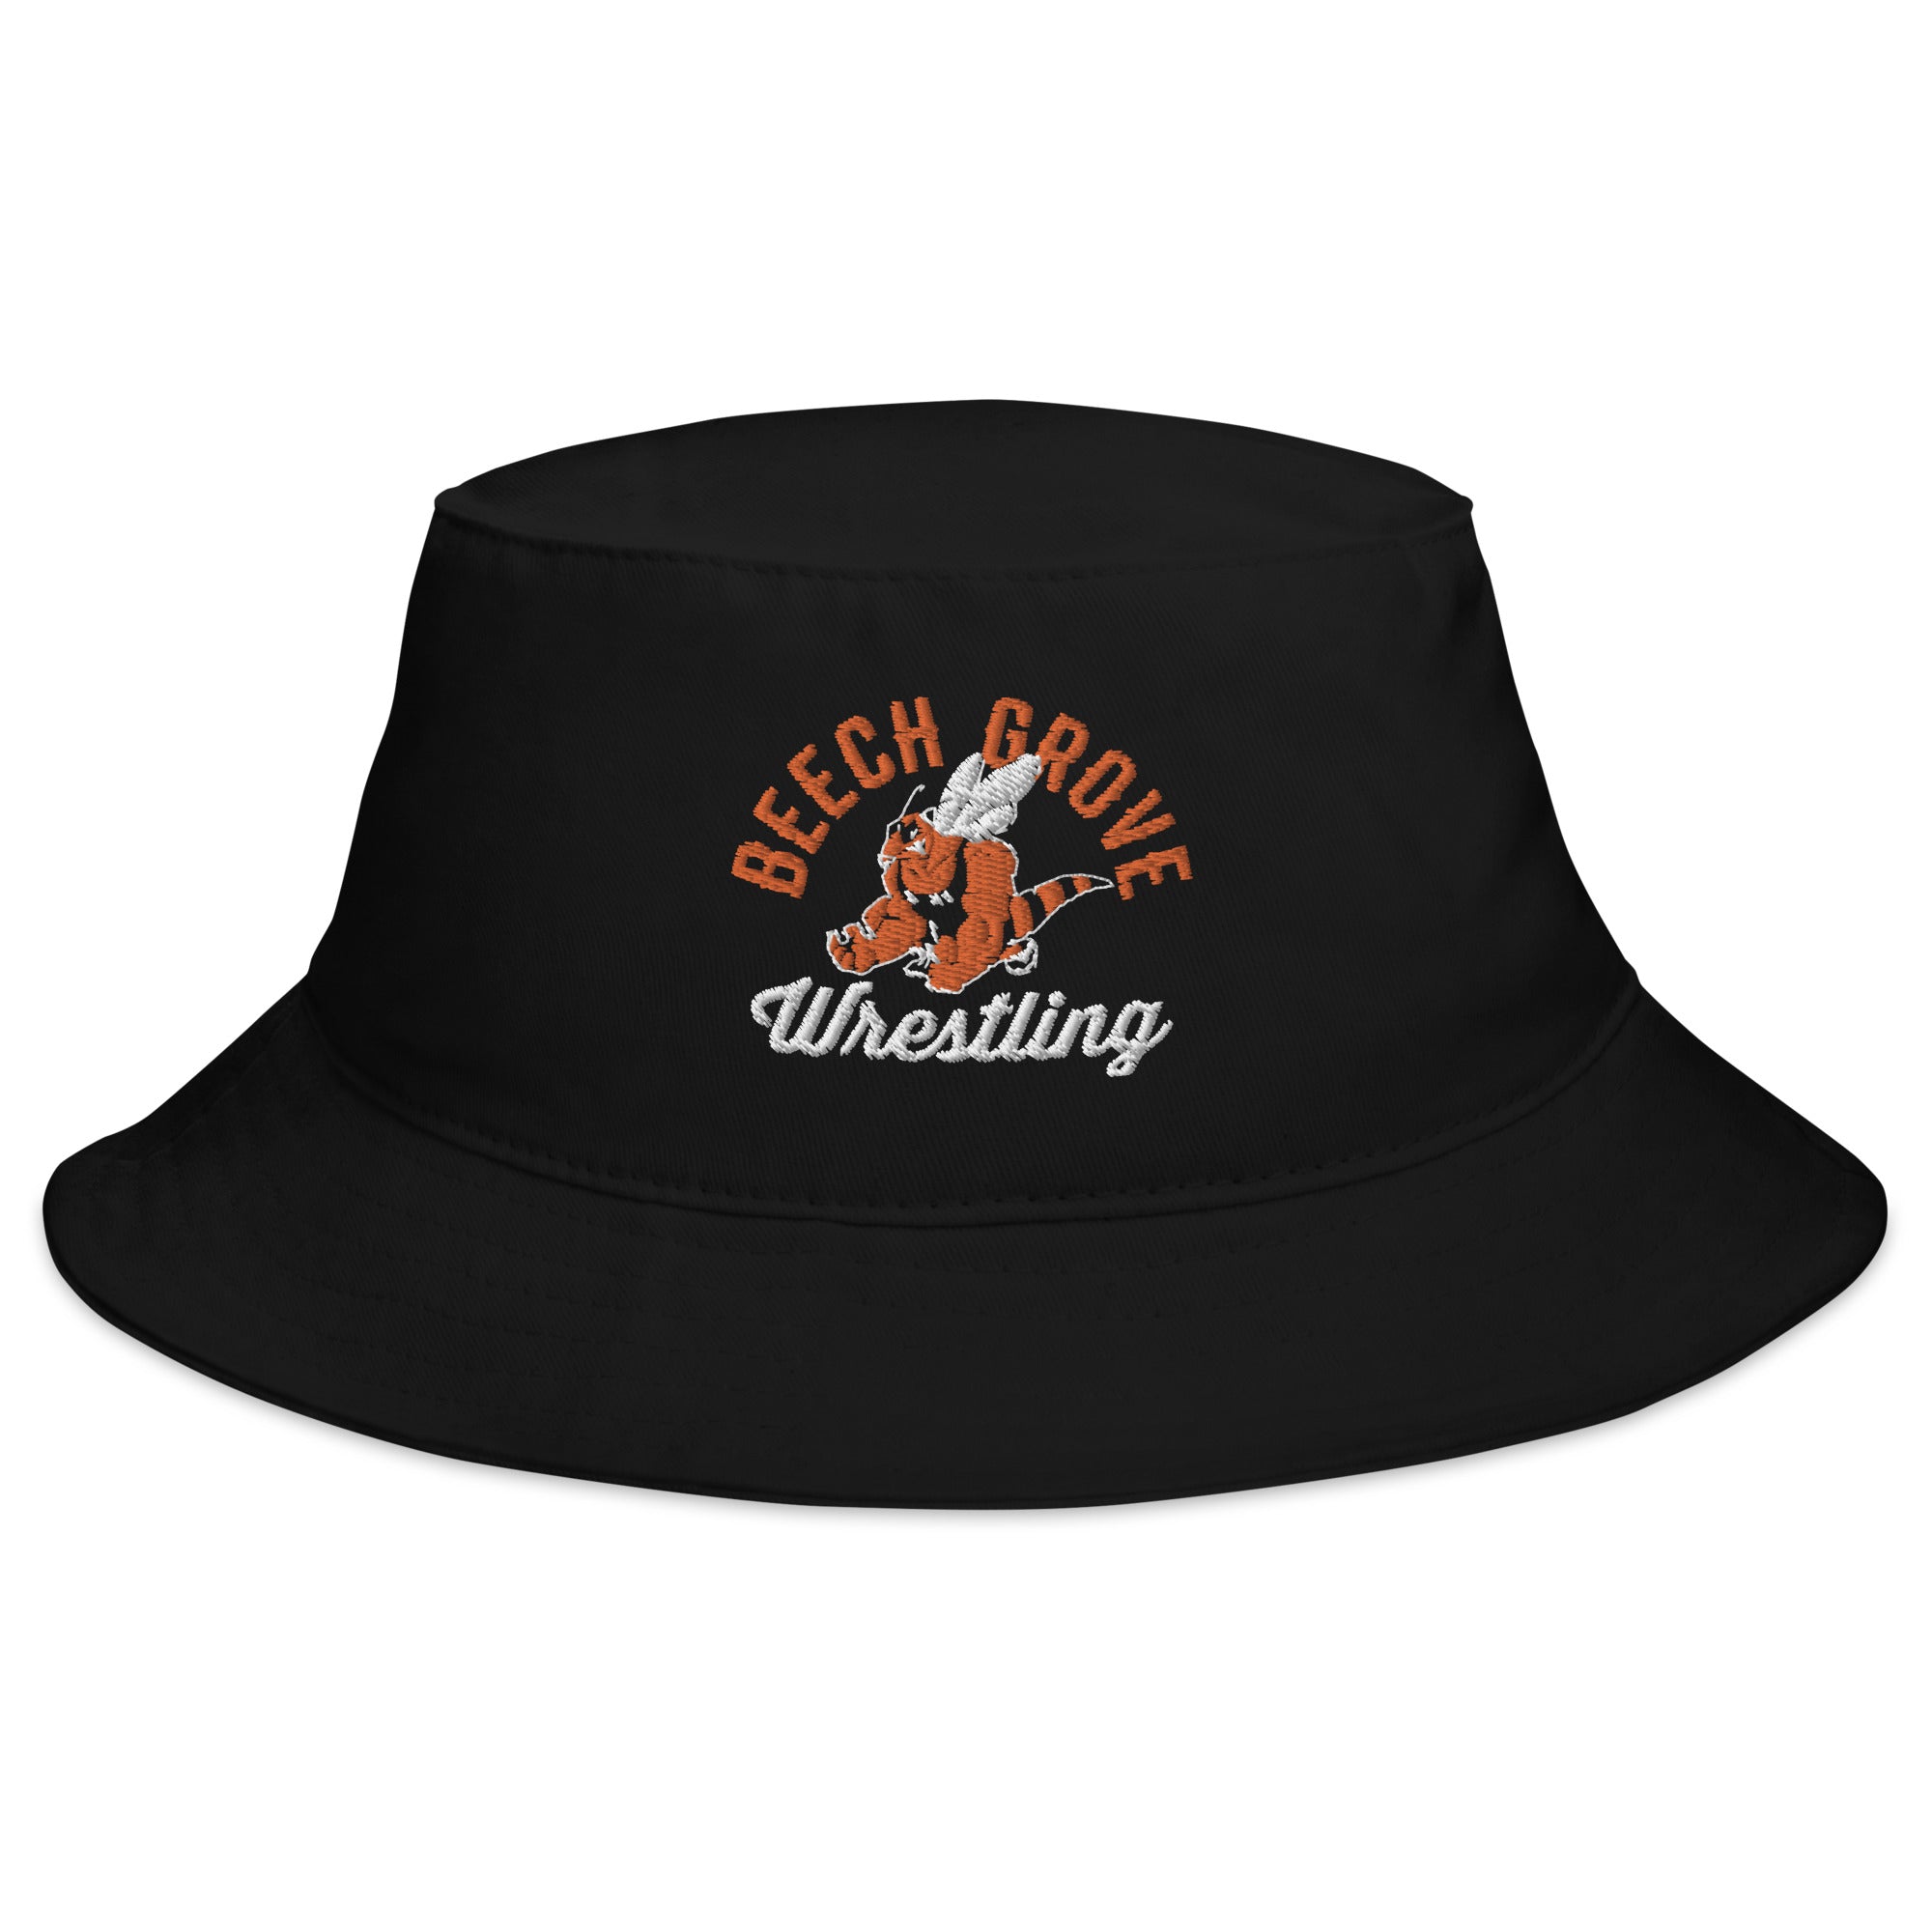 Beech Grove Wrestling Bucket Hat